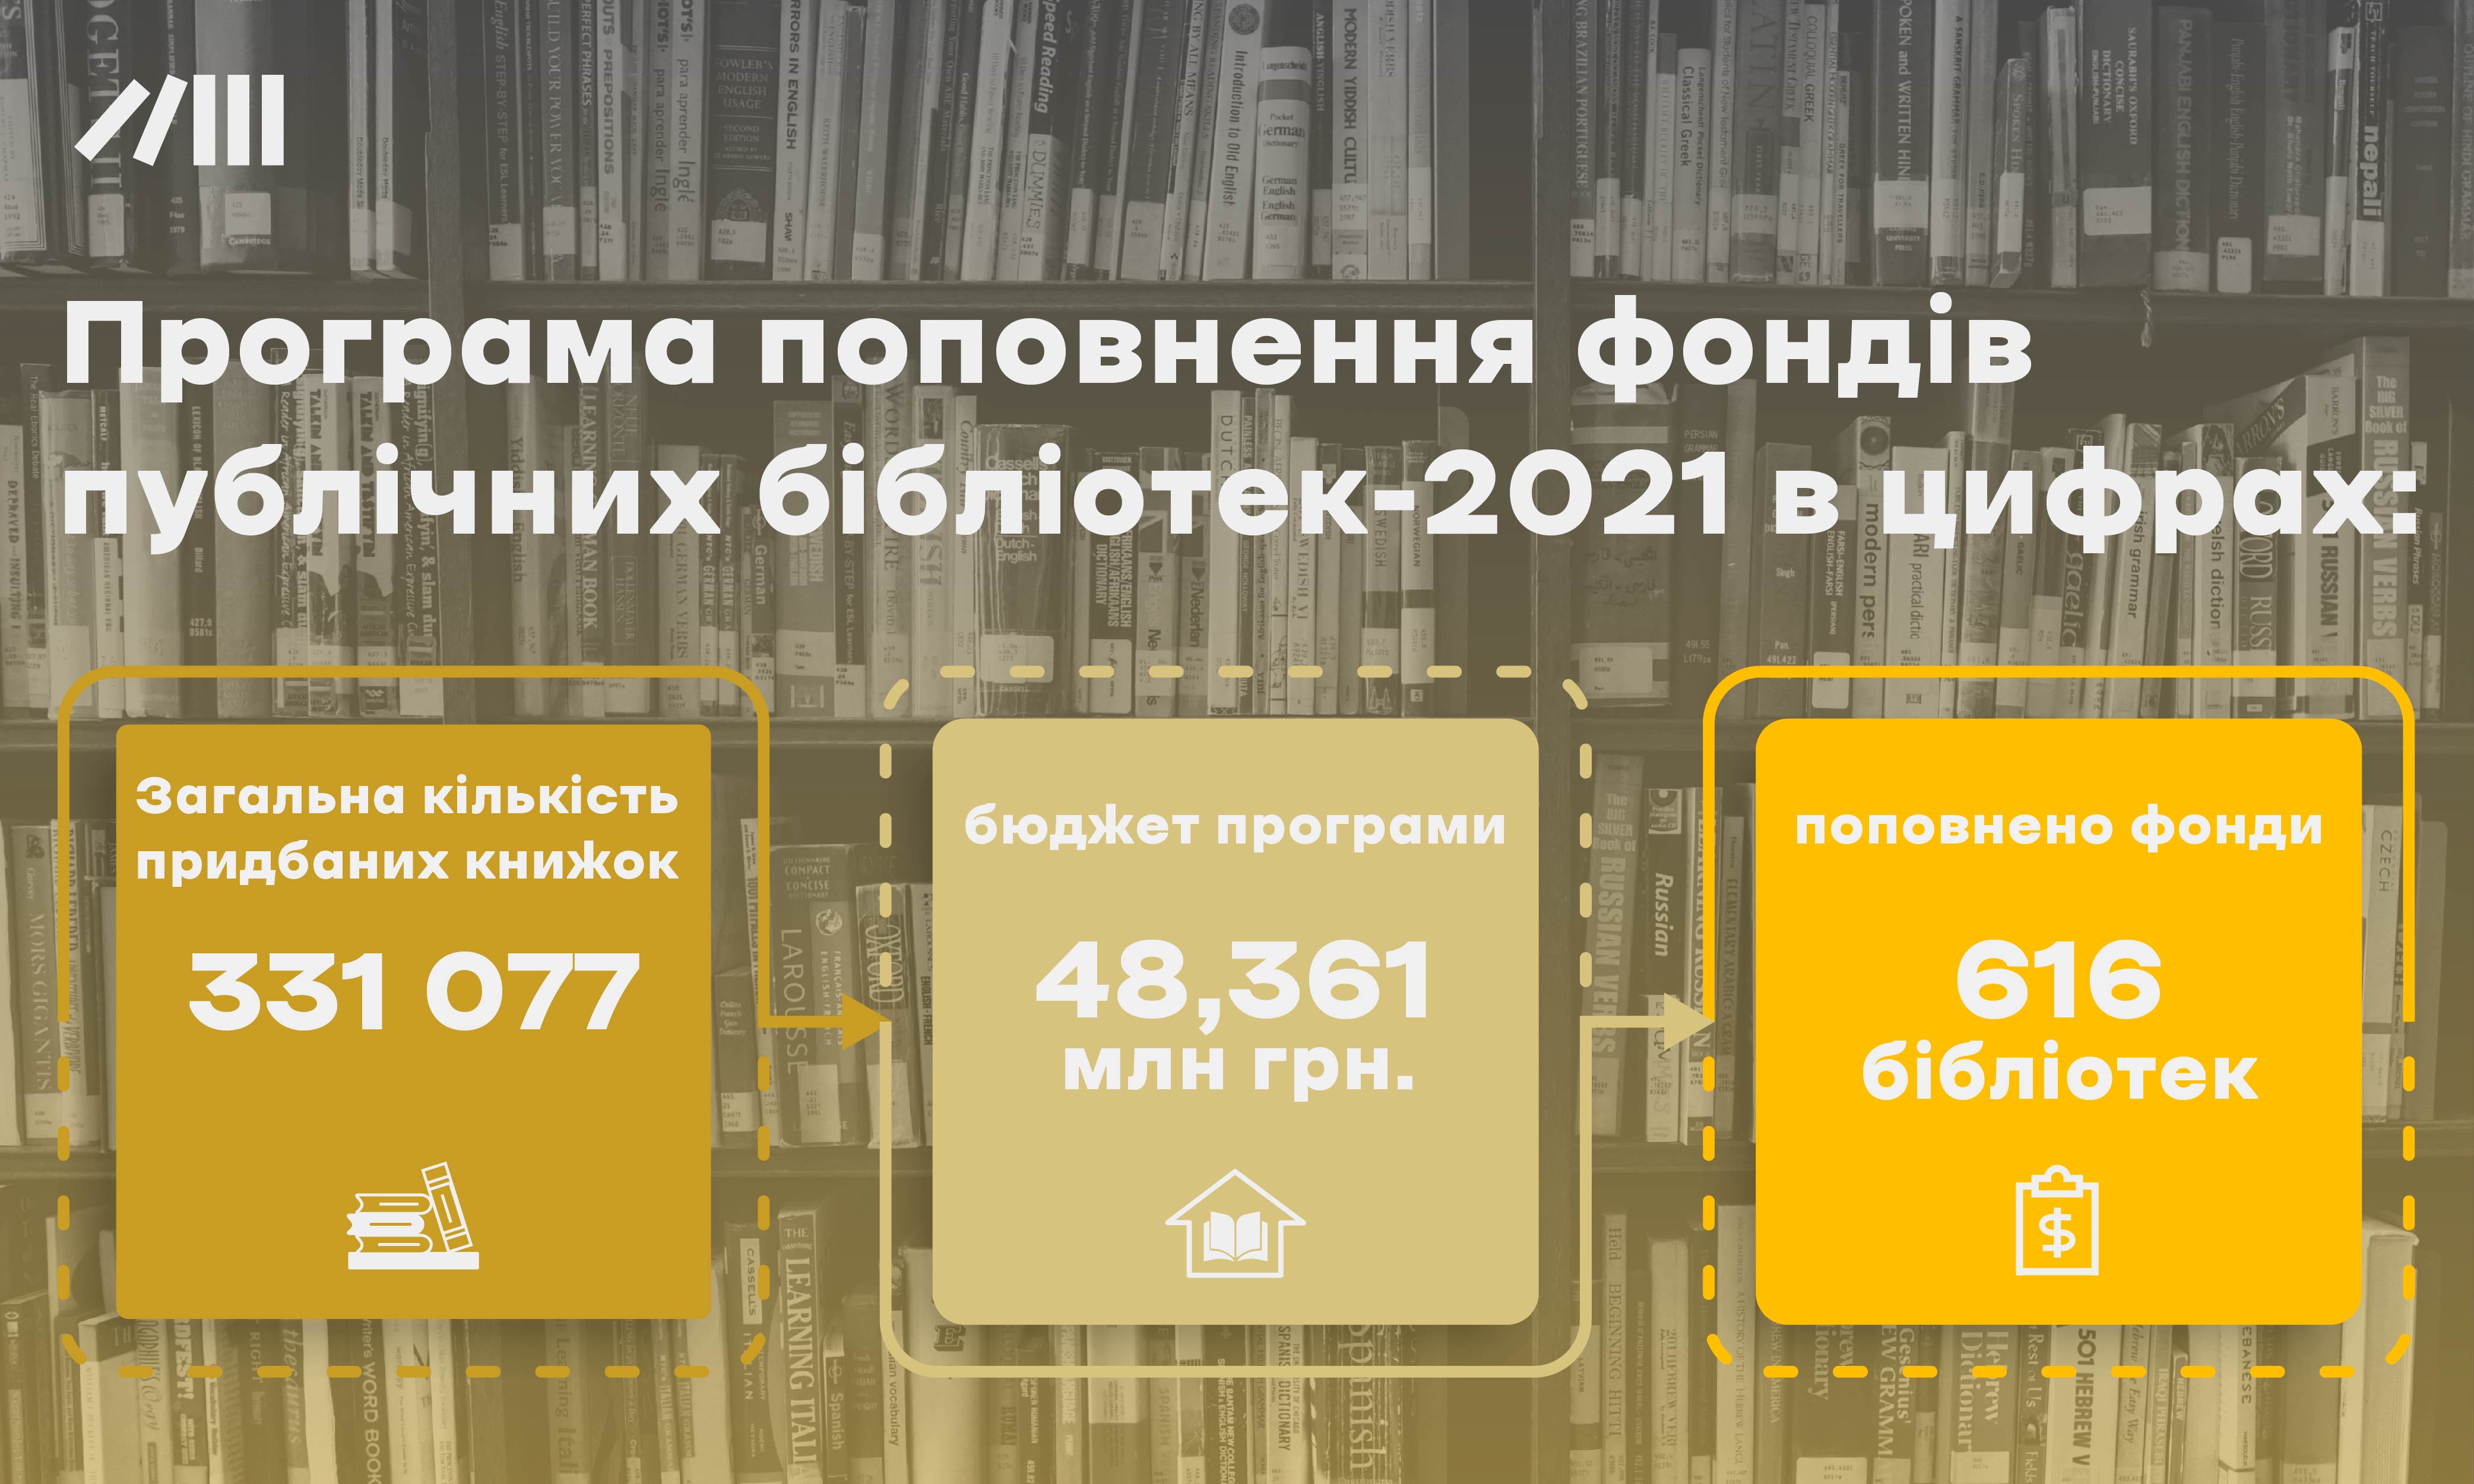 Український інститут книги закупив  понад 331 тисячу книг для 616 бібліотек